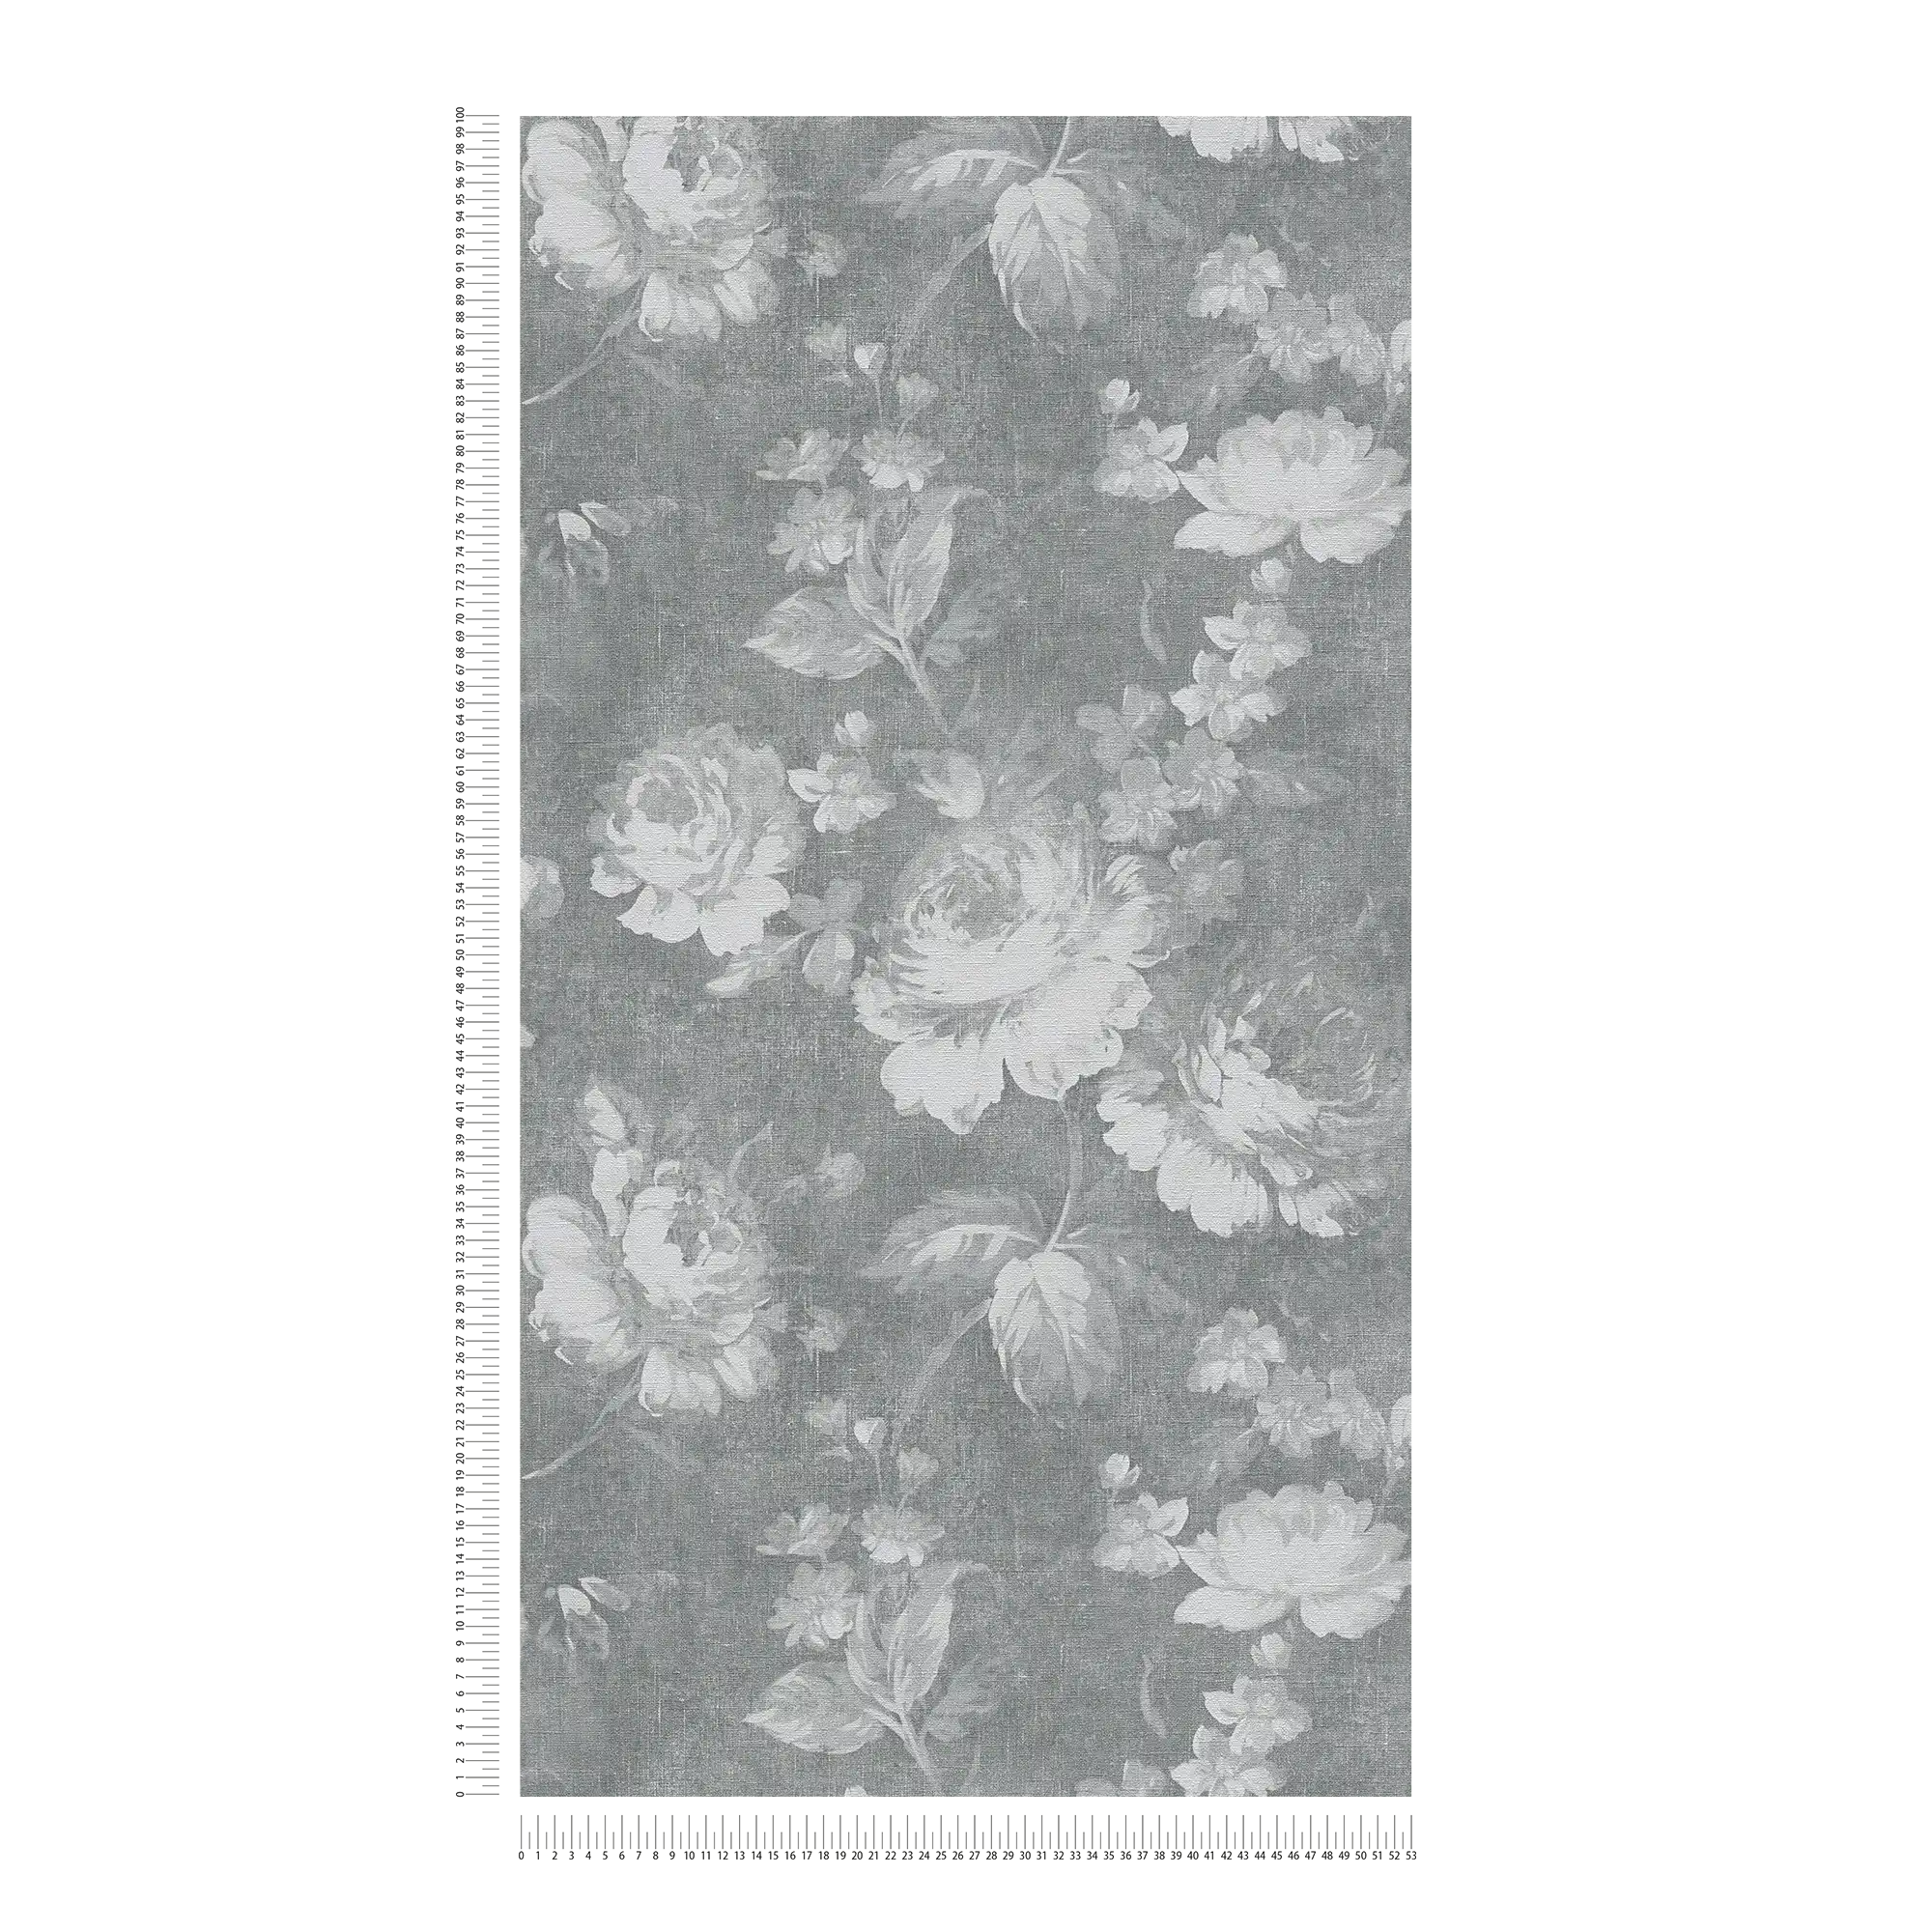             Vintage Rose Pattern Floral Wallpaper - Grijs
        